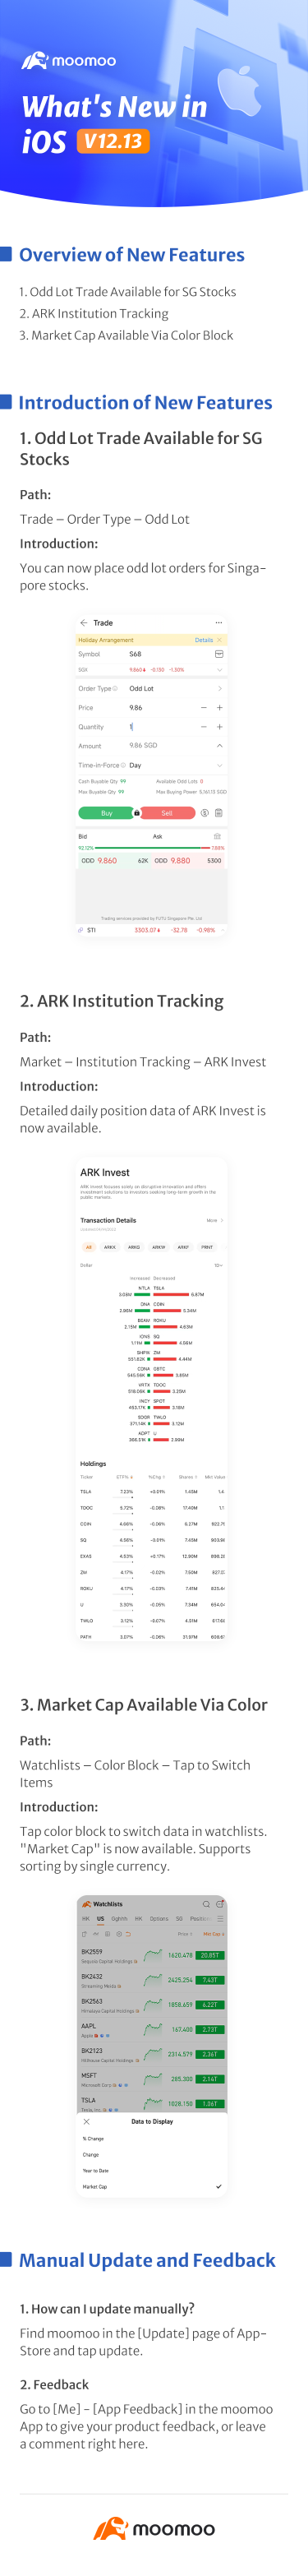 新增内容：新加坡股票的碎股交易在 iOS v12.13 版本中可用